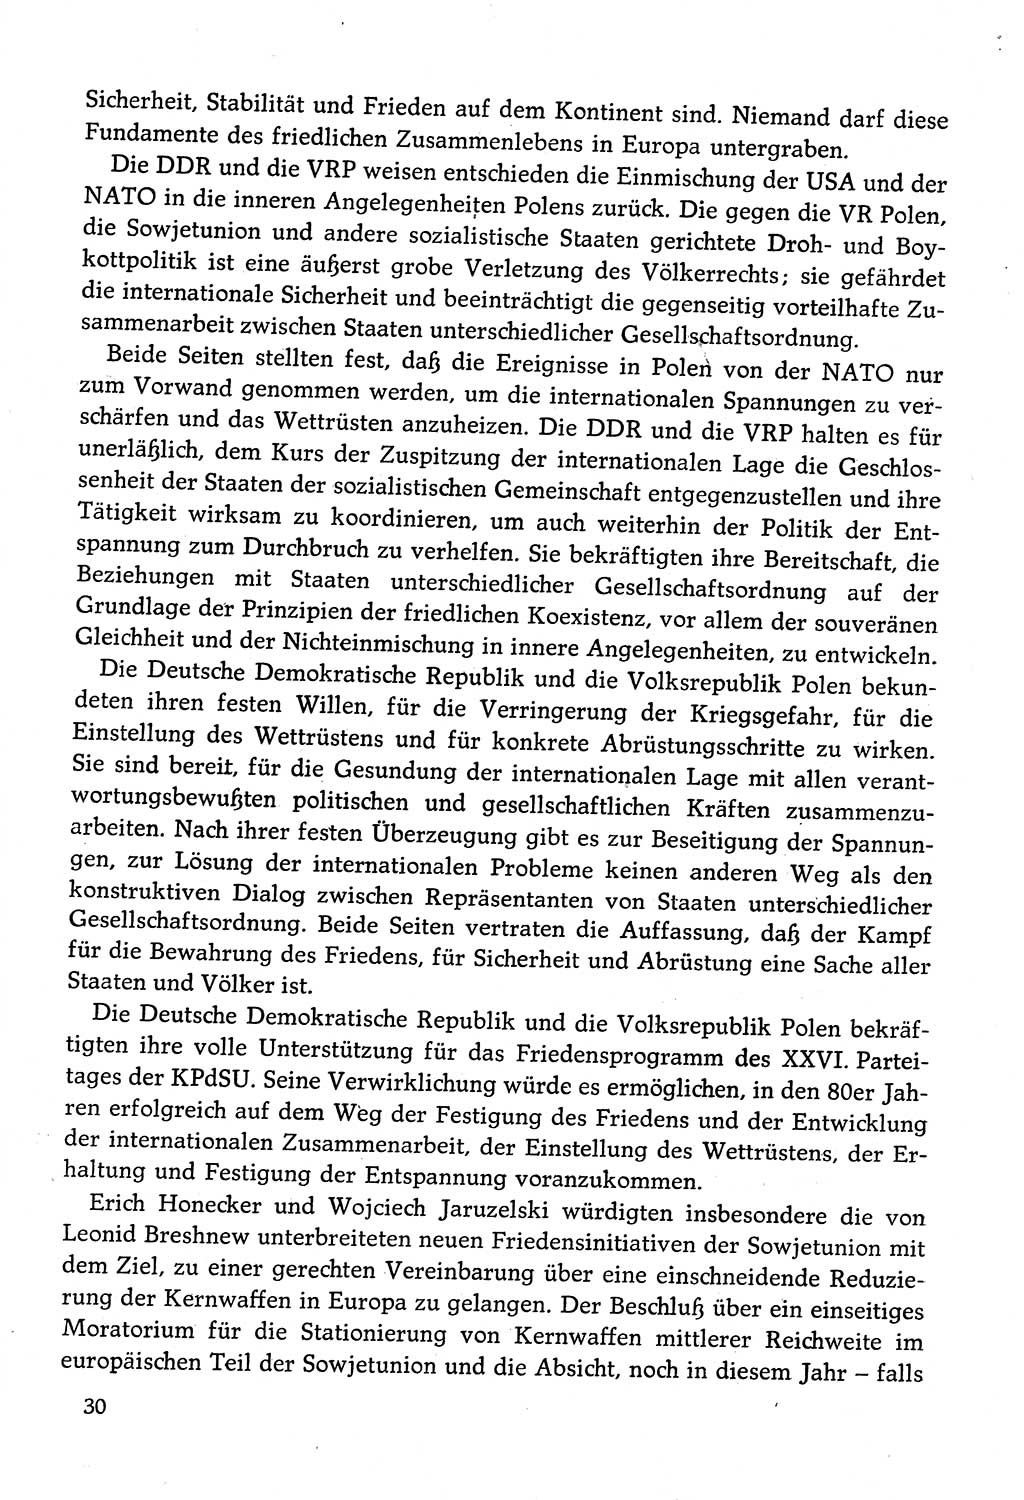 Dokumente der Sozialistischen Einheitspartei Deutschlands (SED) [Deutsche Demokratische Republik (DDR)] 1982-1983, Seite 30 (Dok. SED DDR 1982-1983, S. 30)